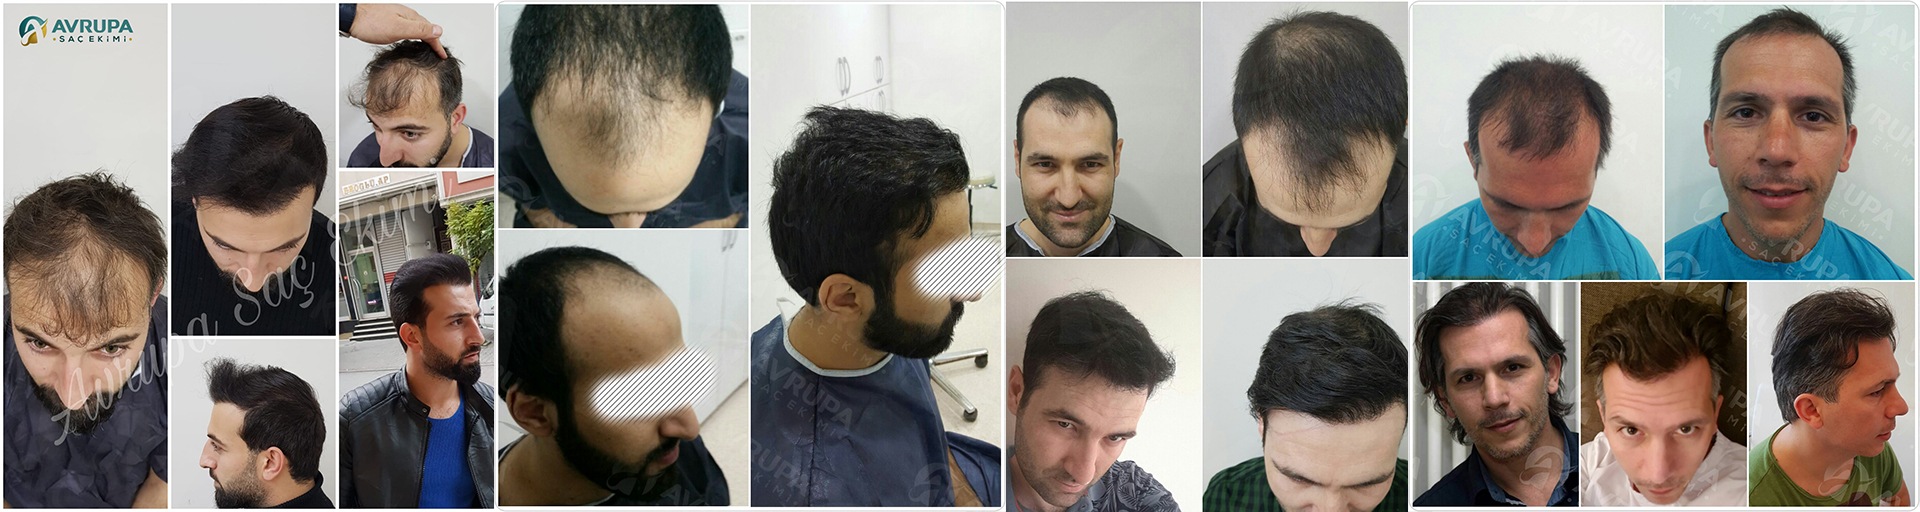 زراعة الشعر في تركيا قبل وبعد – 6 تجارب حقيقية مع الصور